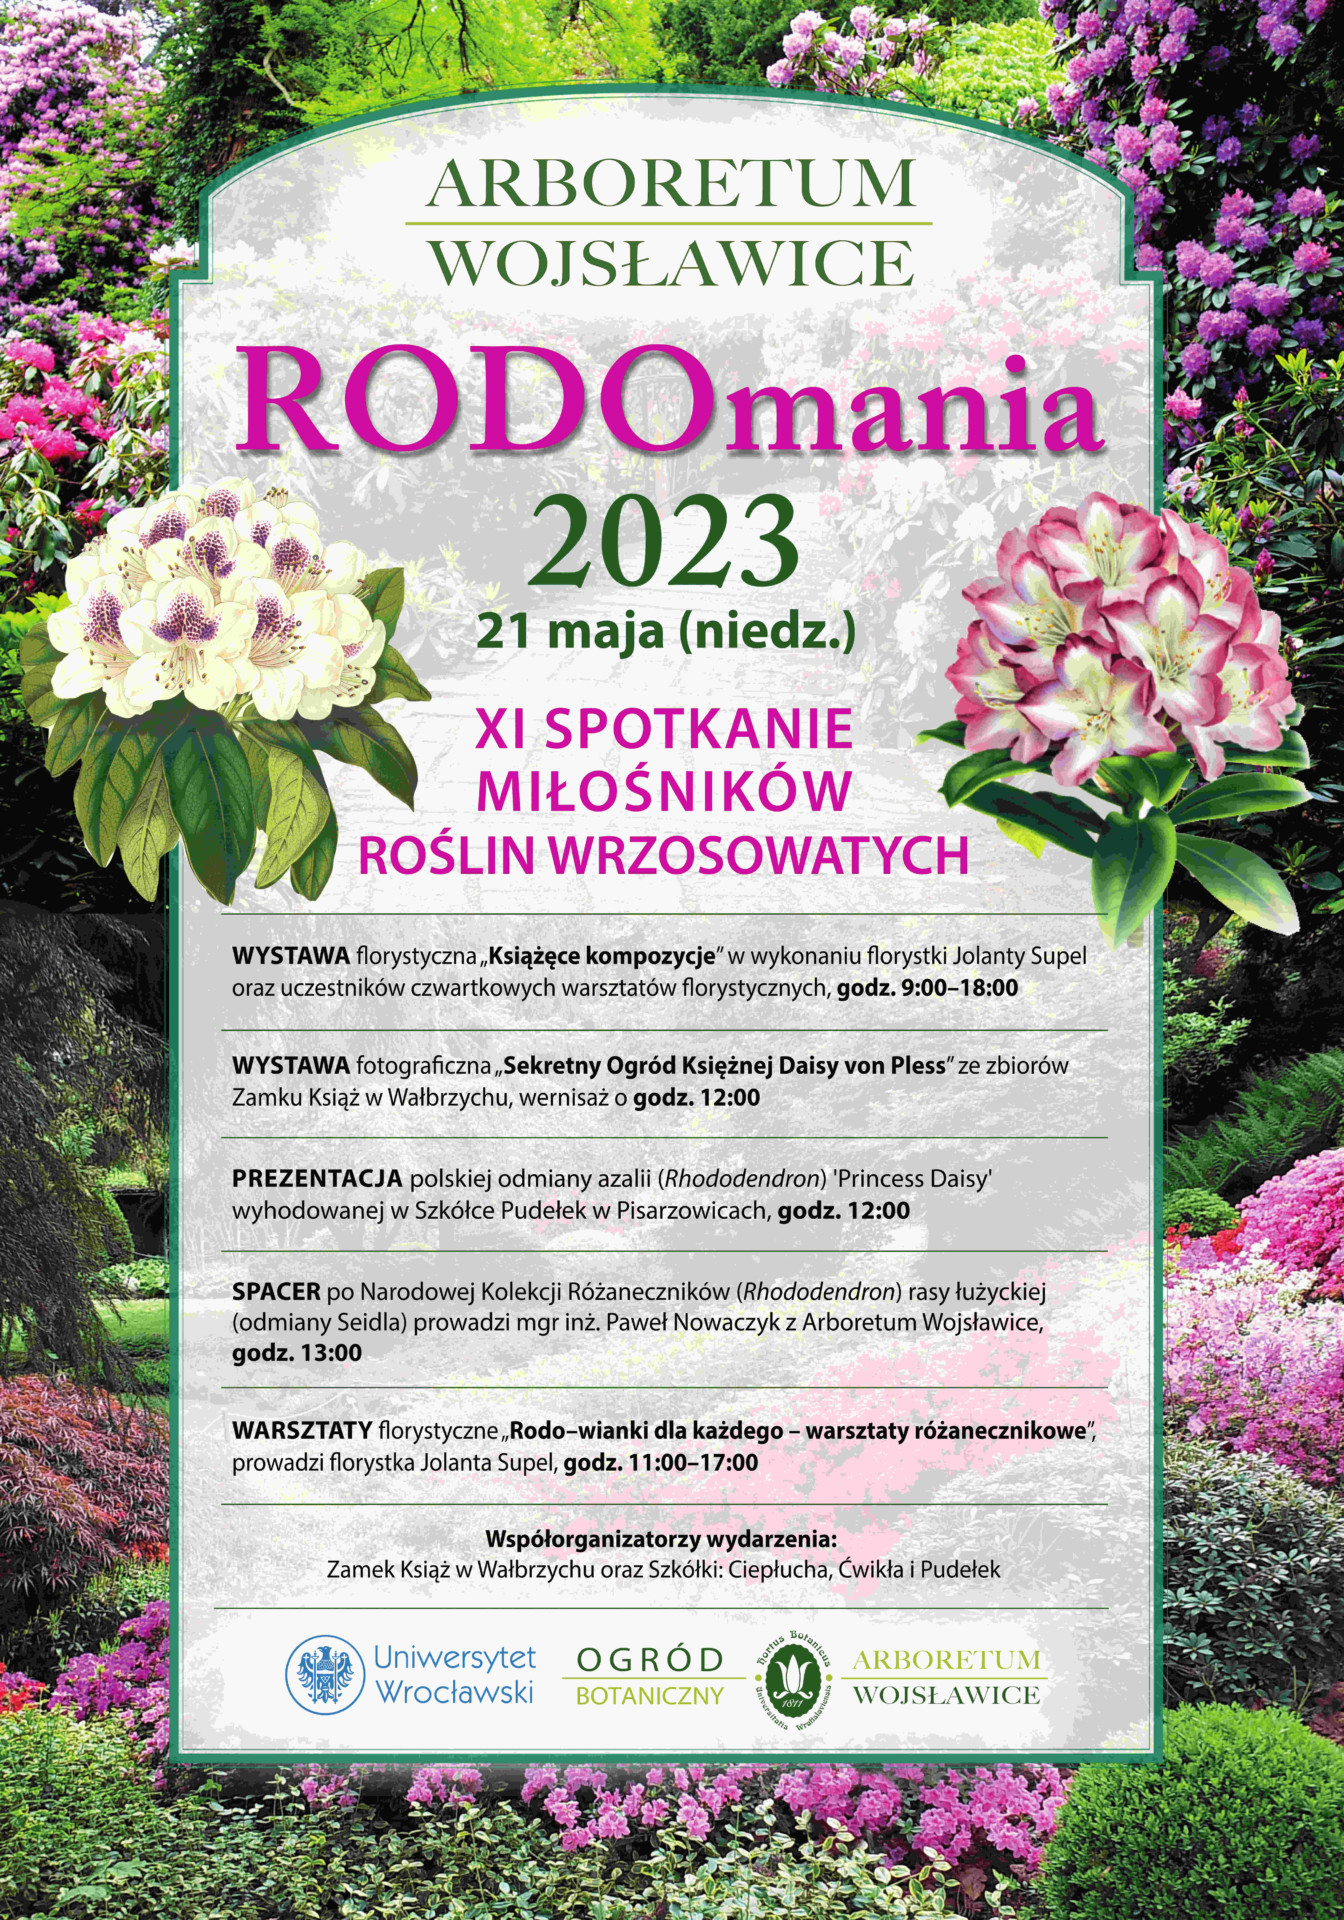 plakat promujący wydarzenie Rodomania 2023